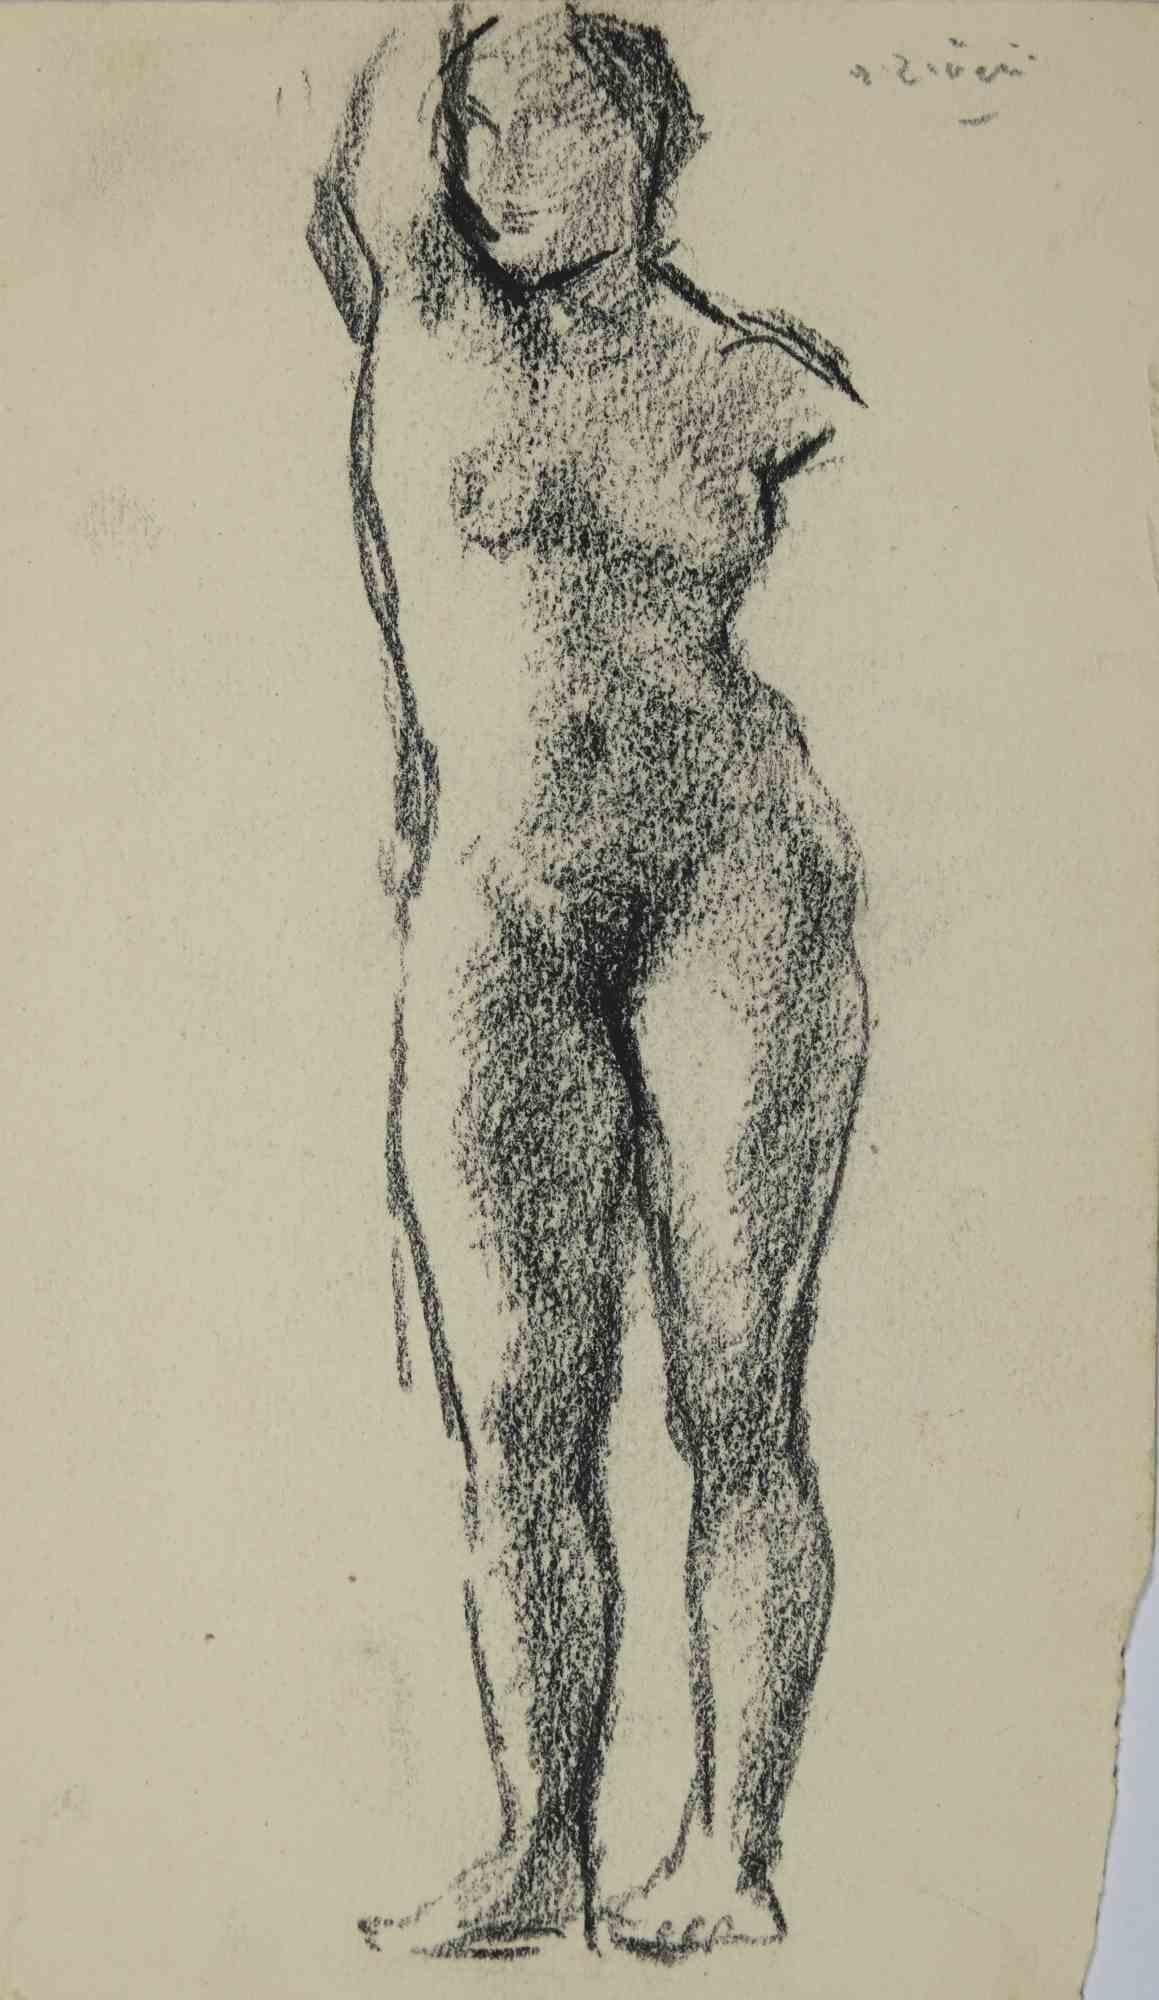 Der Akt ist eine Zeichnung von Alberto Ziveri aus den 1930er Jahren.

Zeichenkohle auf Papier

Handsigniert.

In gutem Zustand. 

Das Kunstwerk wird durch geschickte Striche meisterhaft dargestellt.

Alberto Ziveri (Rom, 1908 - 1990), der